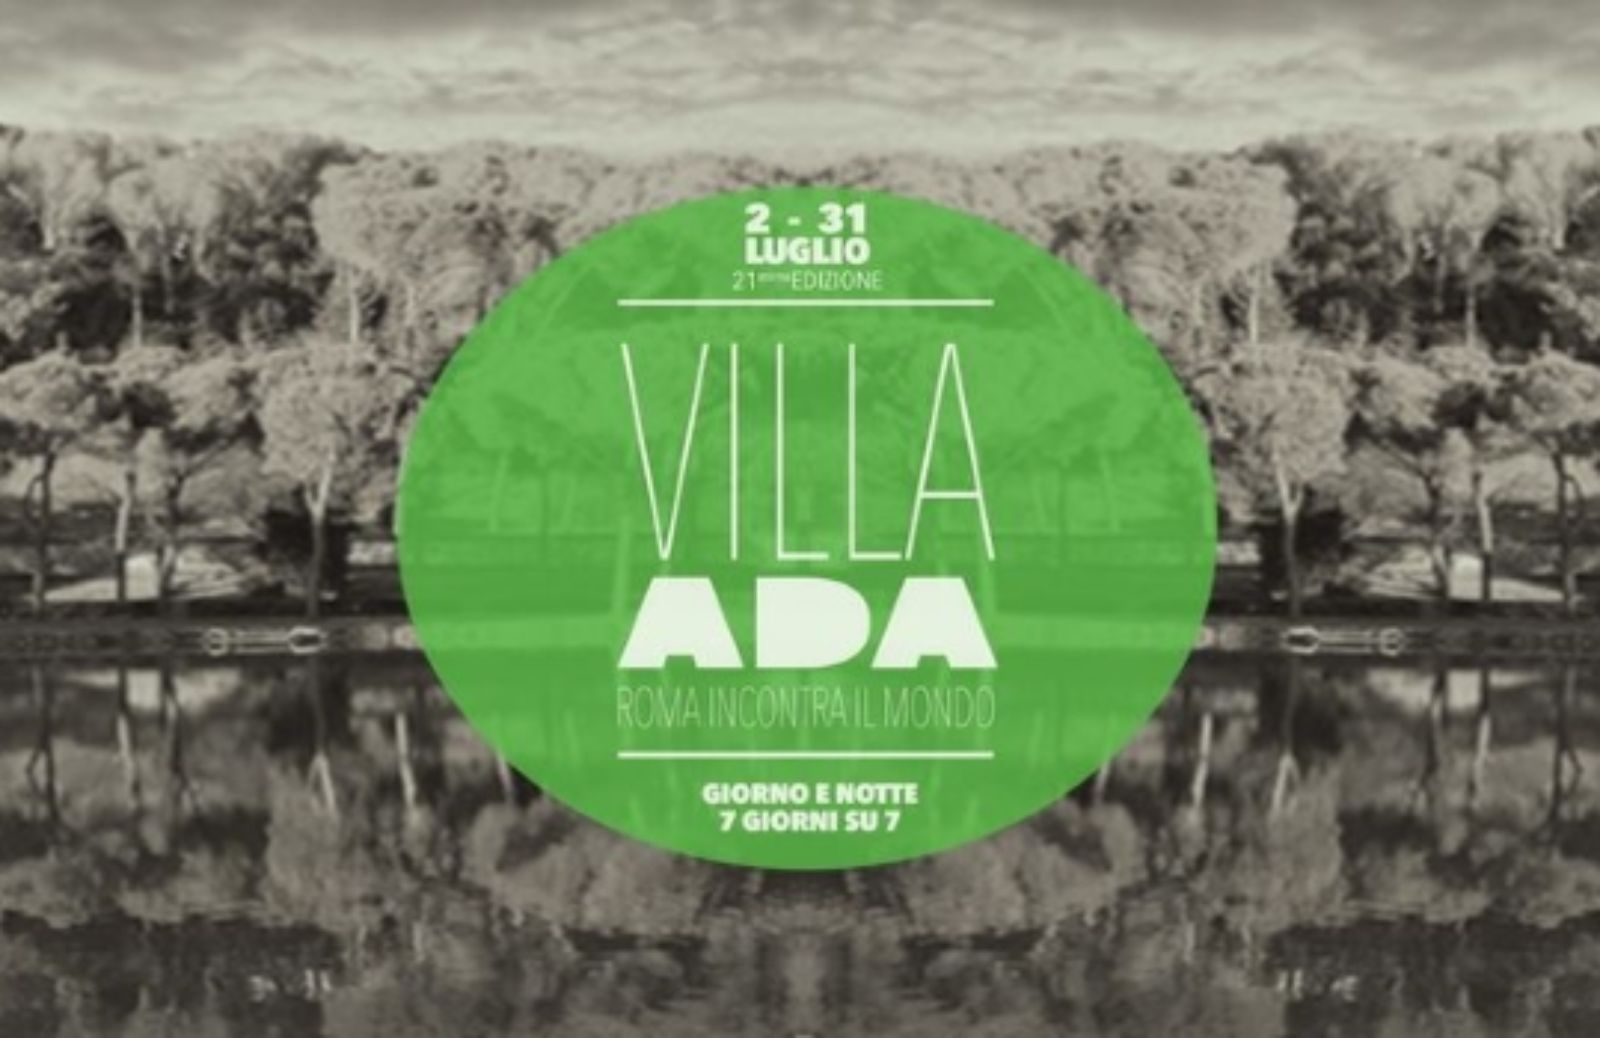 Villa Ada - Roma incontra il mondo 2014: concerti e buon cibo nella capitale